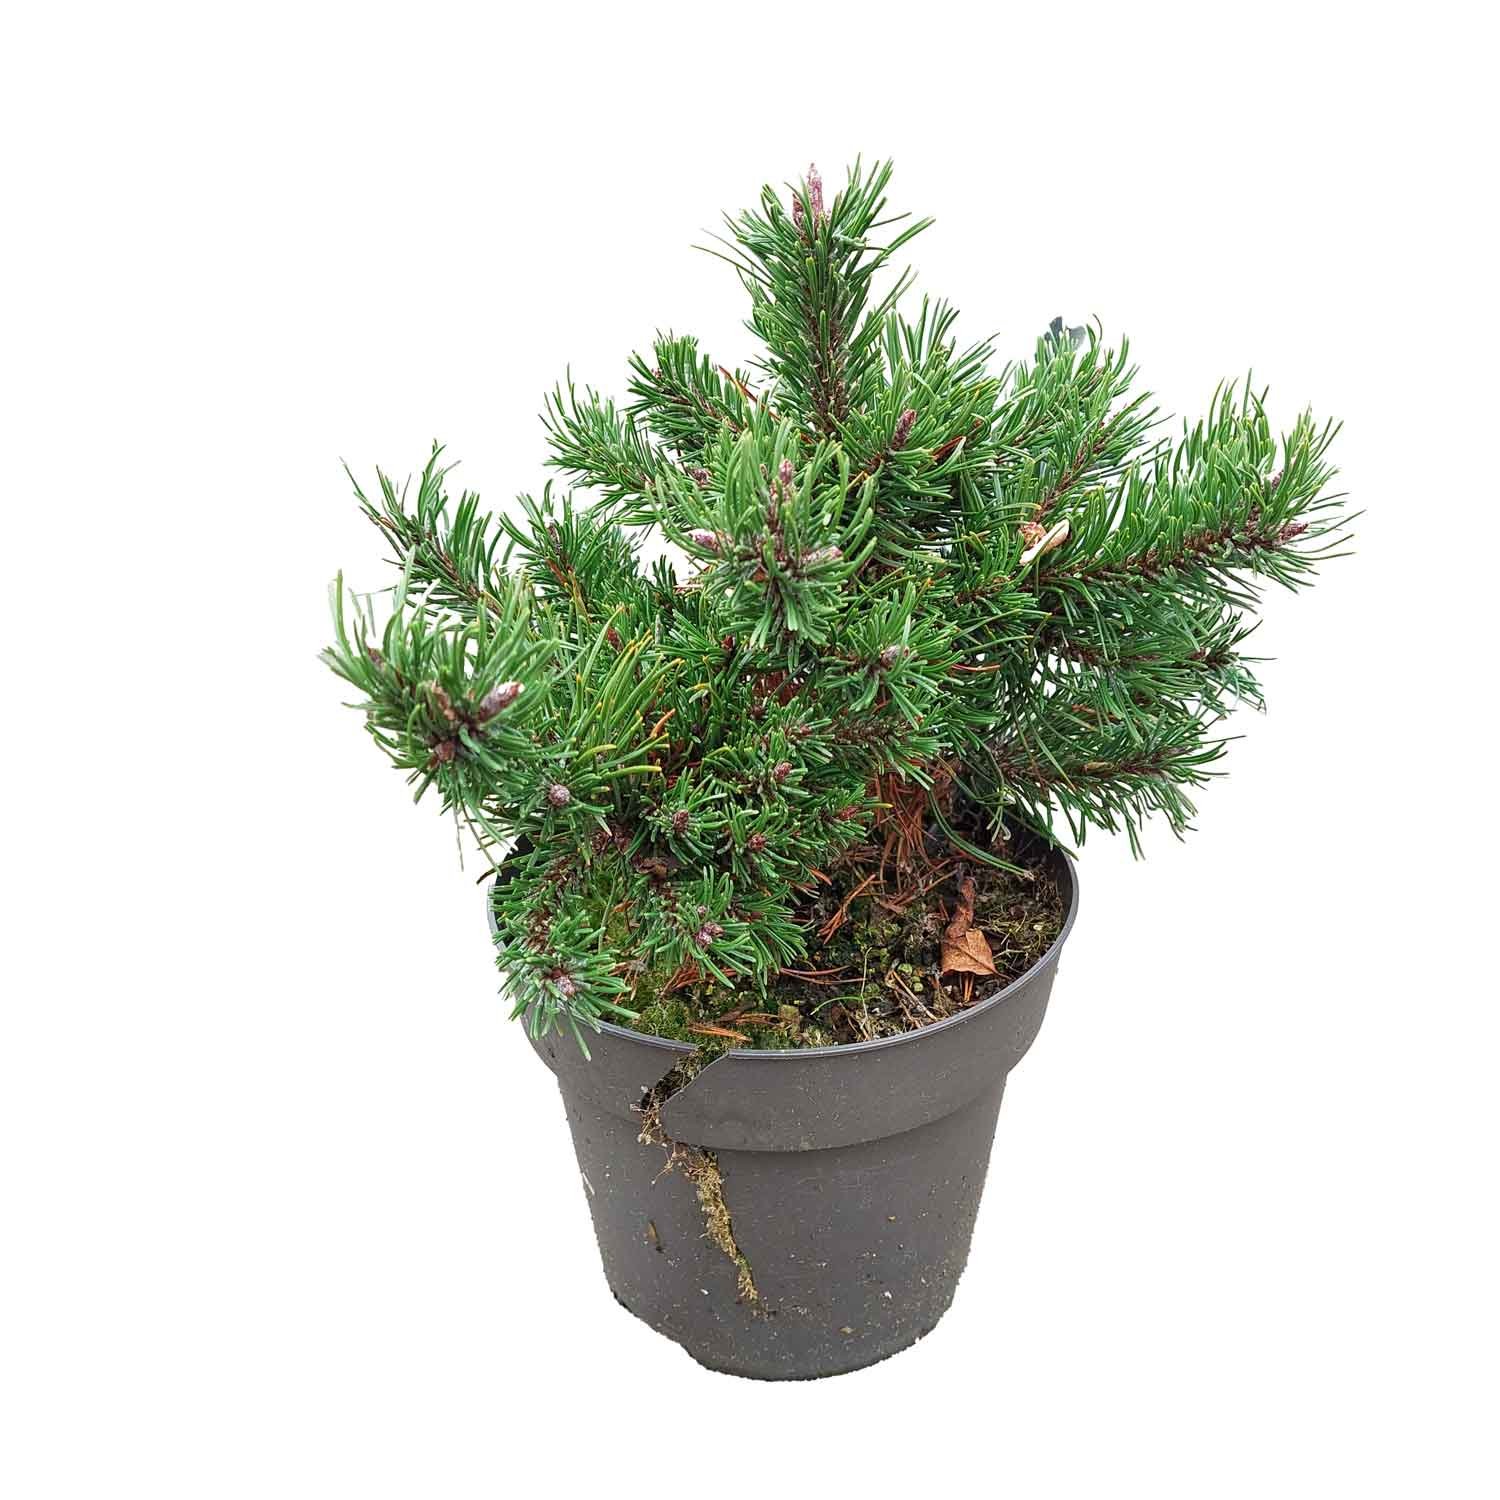 Dværgfyr - Pinus mugo 'Klostergrün' C 2,3